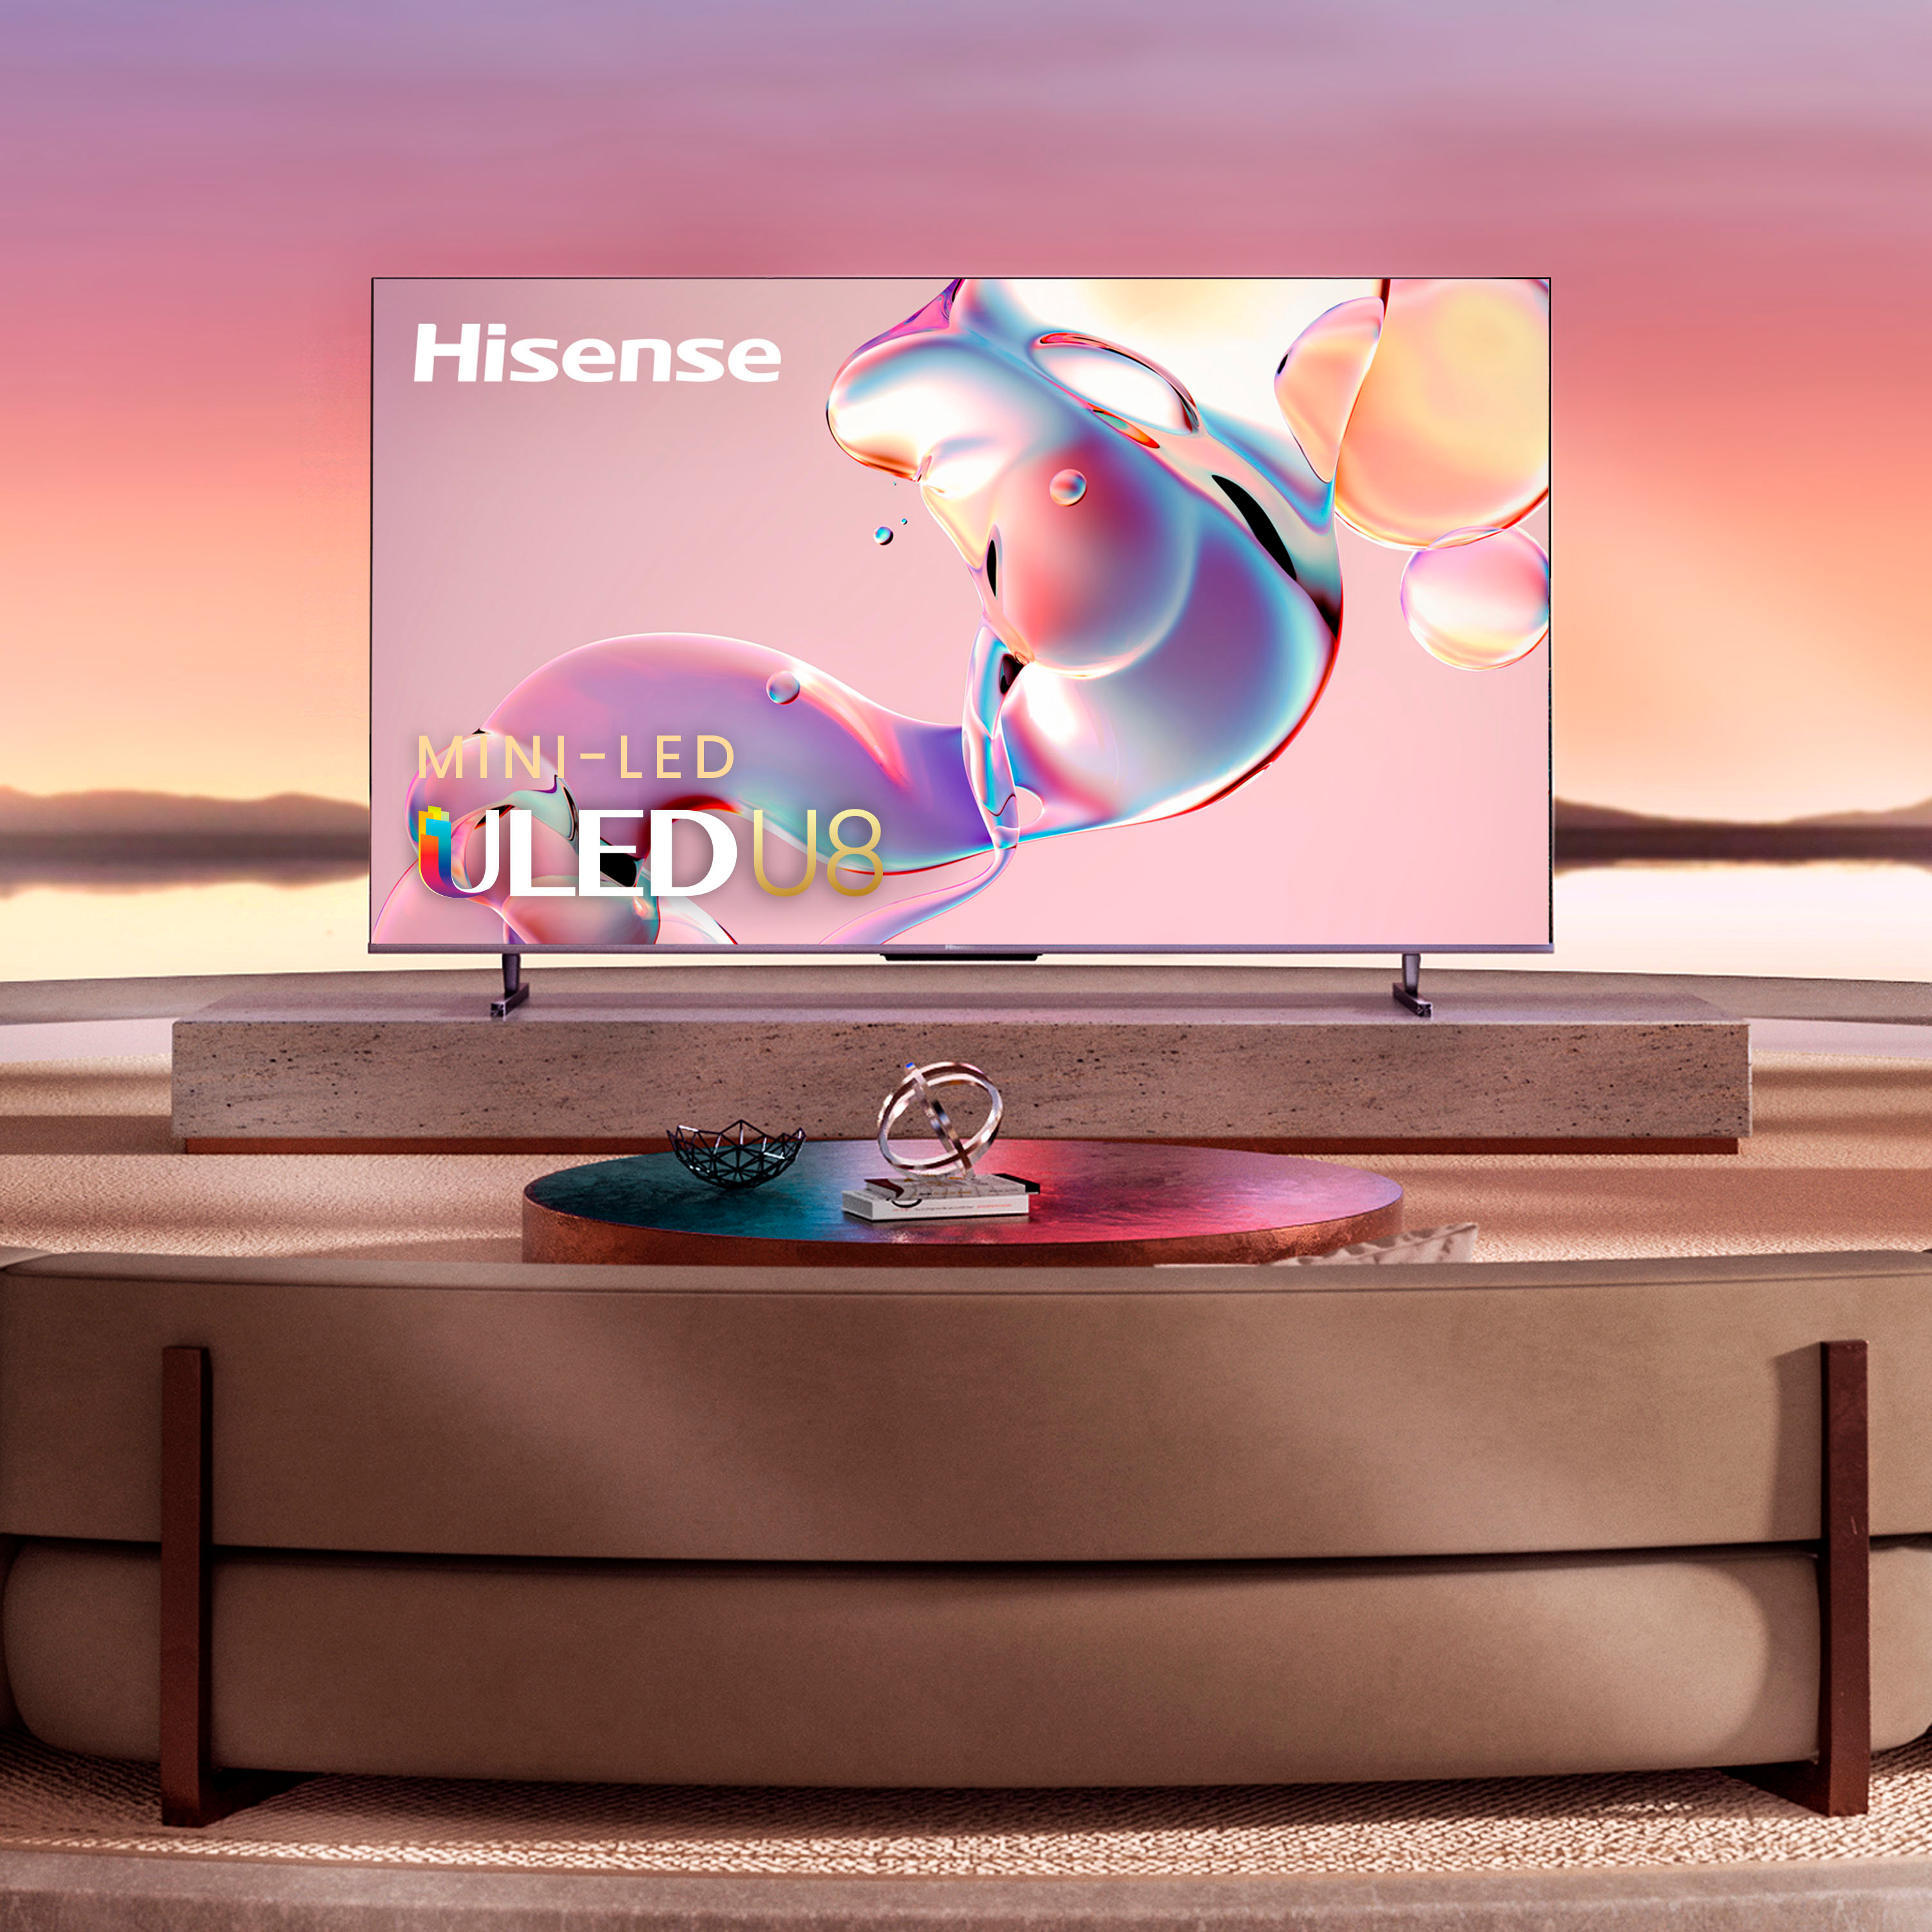 HISENSE MINI-LED ULED TV 100, GOOGLE TV